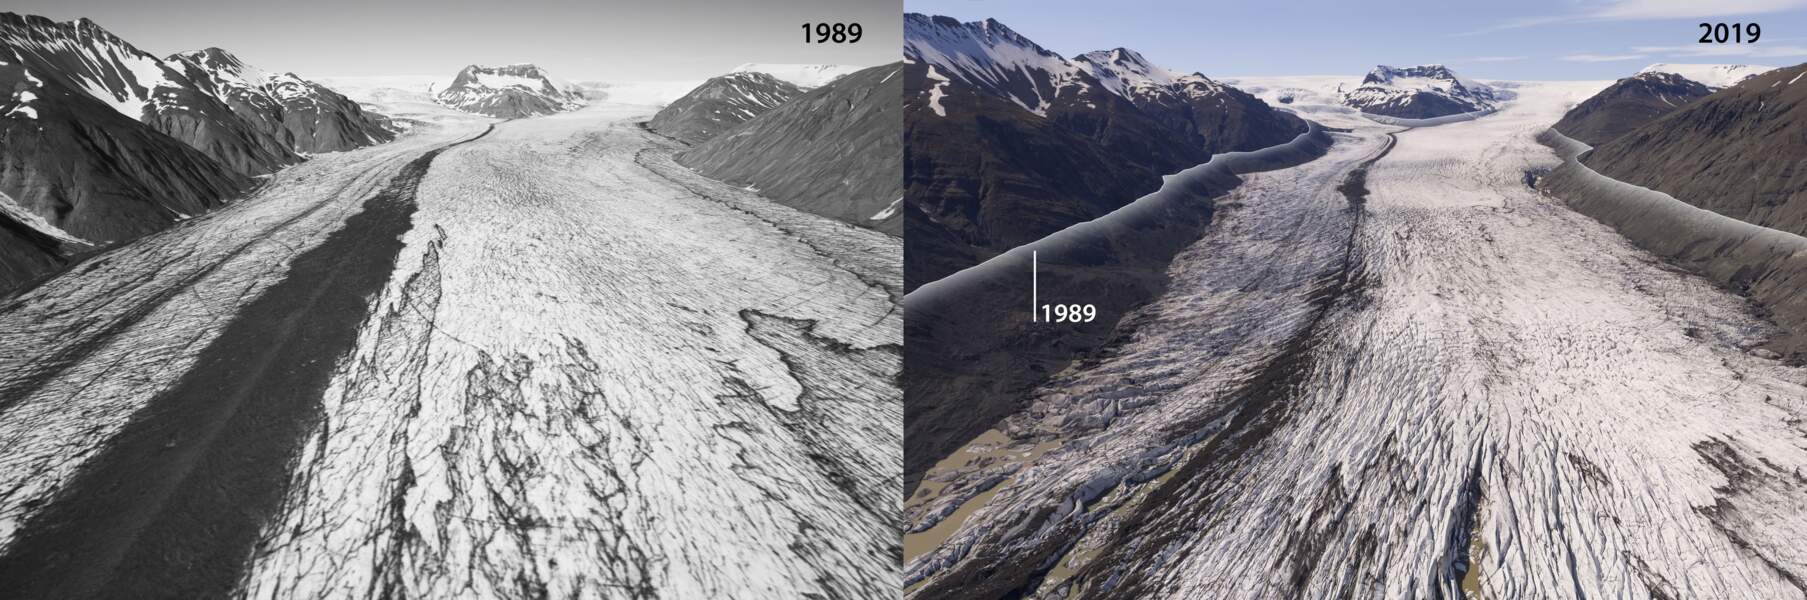 Le glacier Heinabergsjökull en 1989 et en 2019